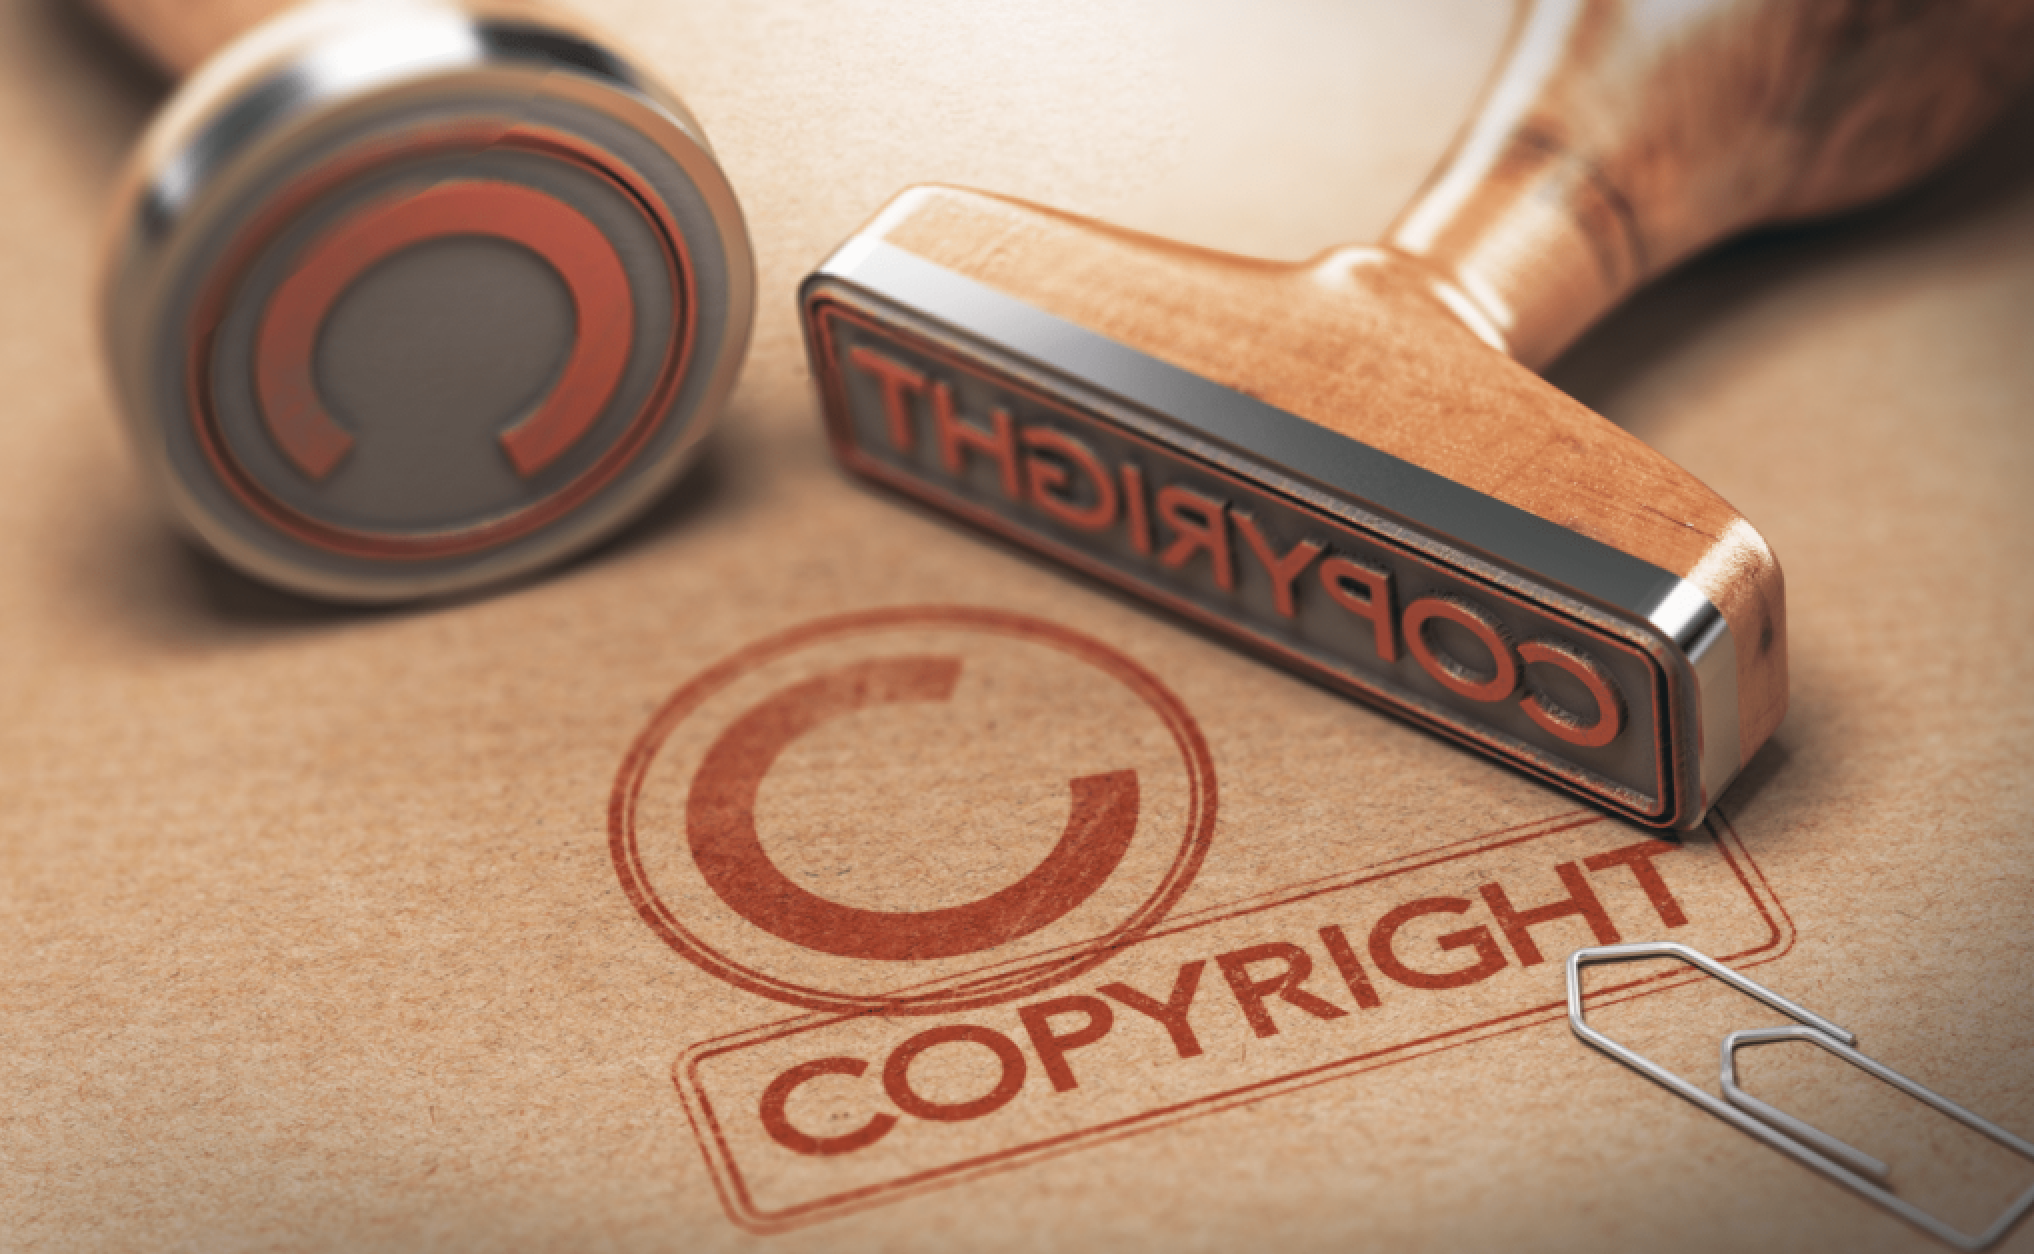 حقوق الملكية الفكرية … أنت تبدع ... ونحن نحمي ابداعك